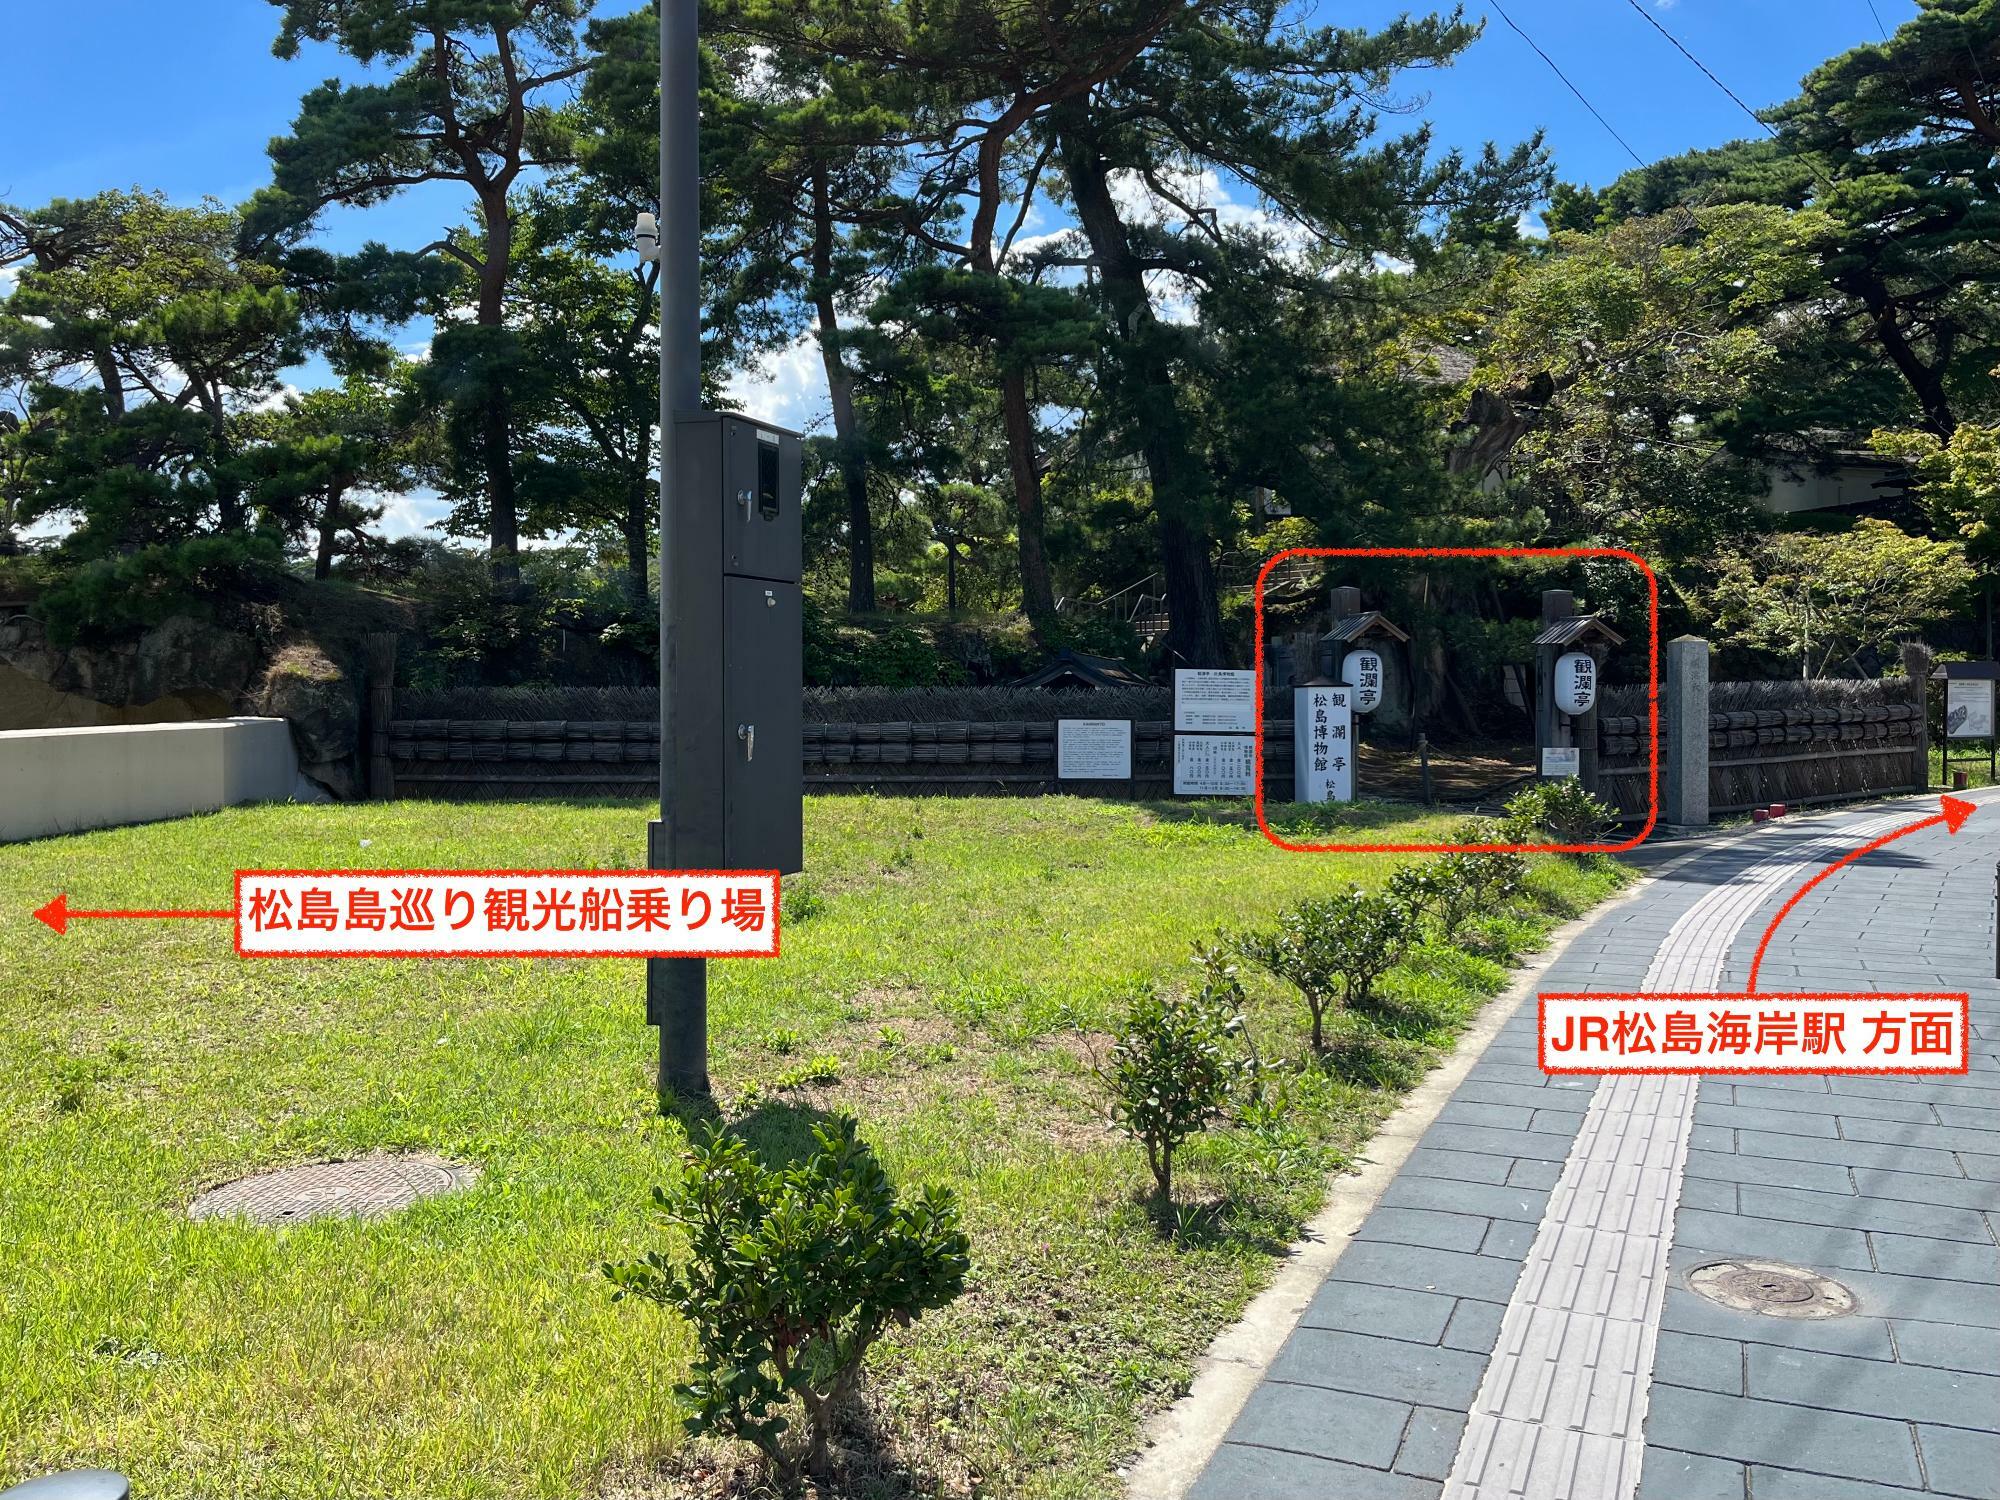 ▲ 観瀾亭（かんらんてい）はJR松島海岸駅から徒歩約7、8分の場所にあり、「松島島巡り観光船」船乗り場のちょうど裏手にあたる